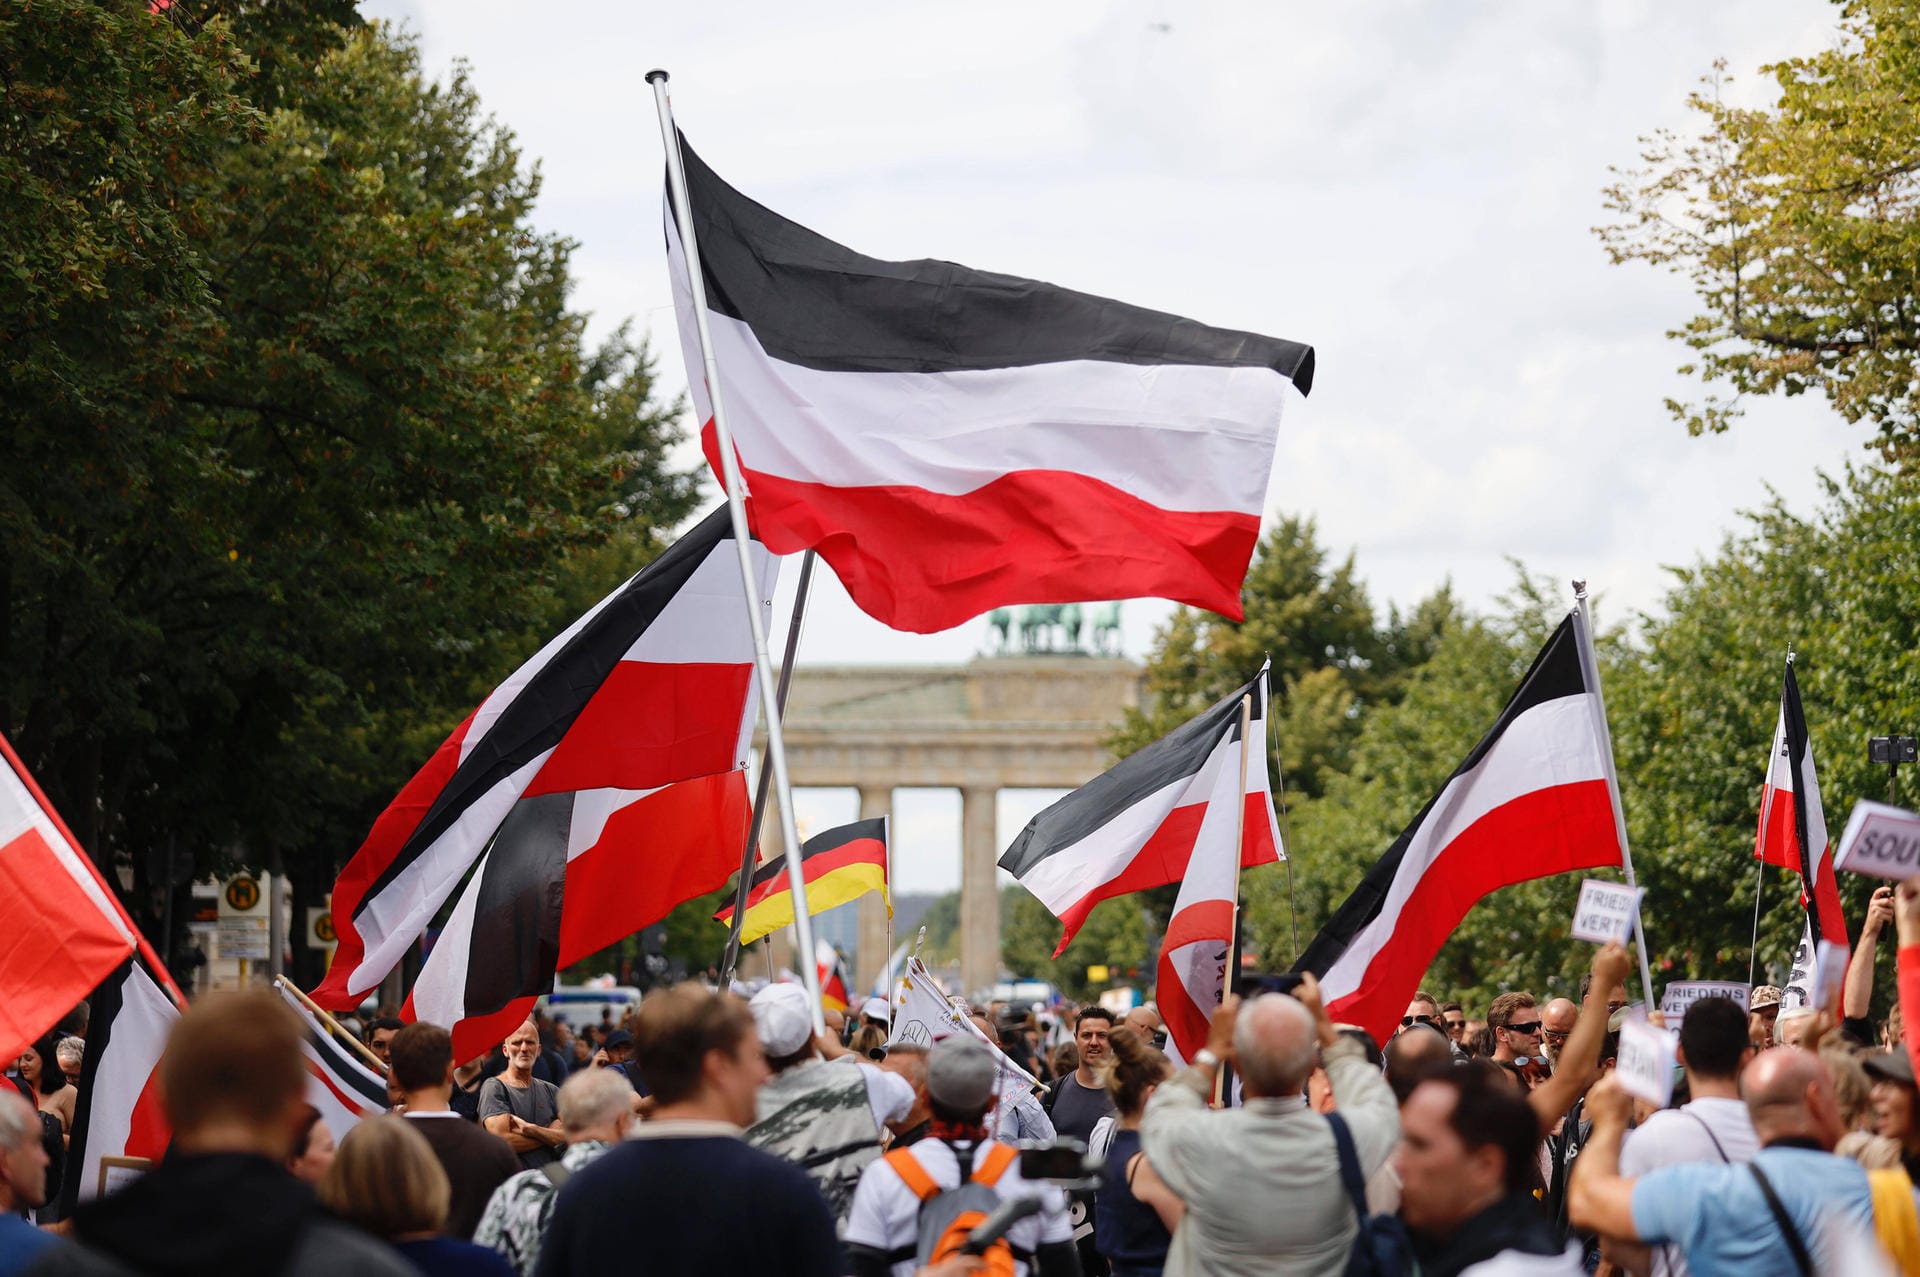 Schwarz-Weiß-Rot: Die Flagge war seit 1866 zunächst die Flagge des Norddeutschen Bundes und seit 1871 die des deutschen Kaiserreiches. Seit 1892 war sie die offizielle Nationalflagge des Deutschen Reiches. Als Reichsfahne wird sie noch heute von Rechtsextremisten getragen, da ihre Verwendung nicht strafbar ist.